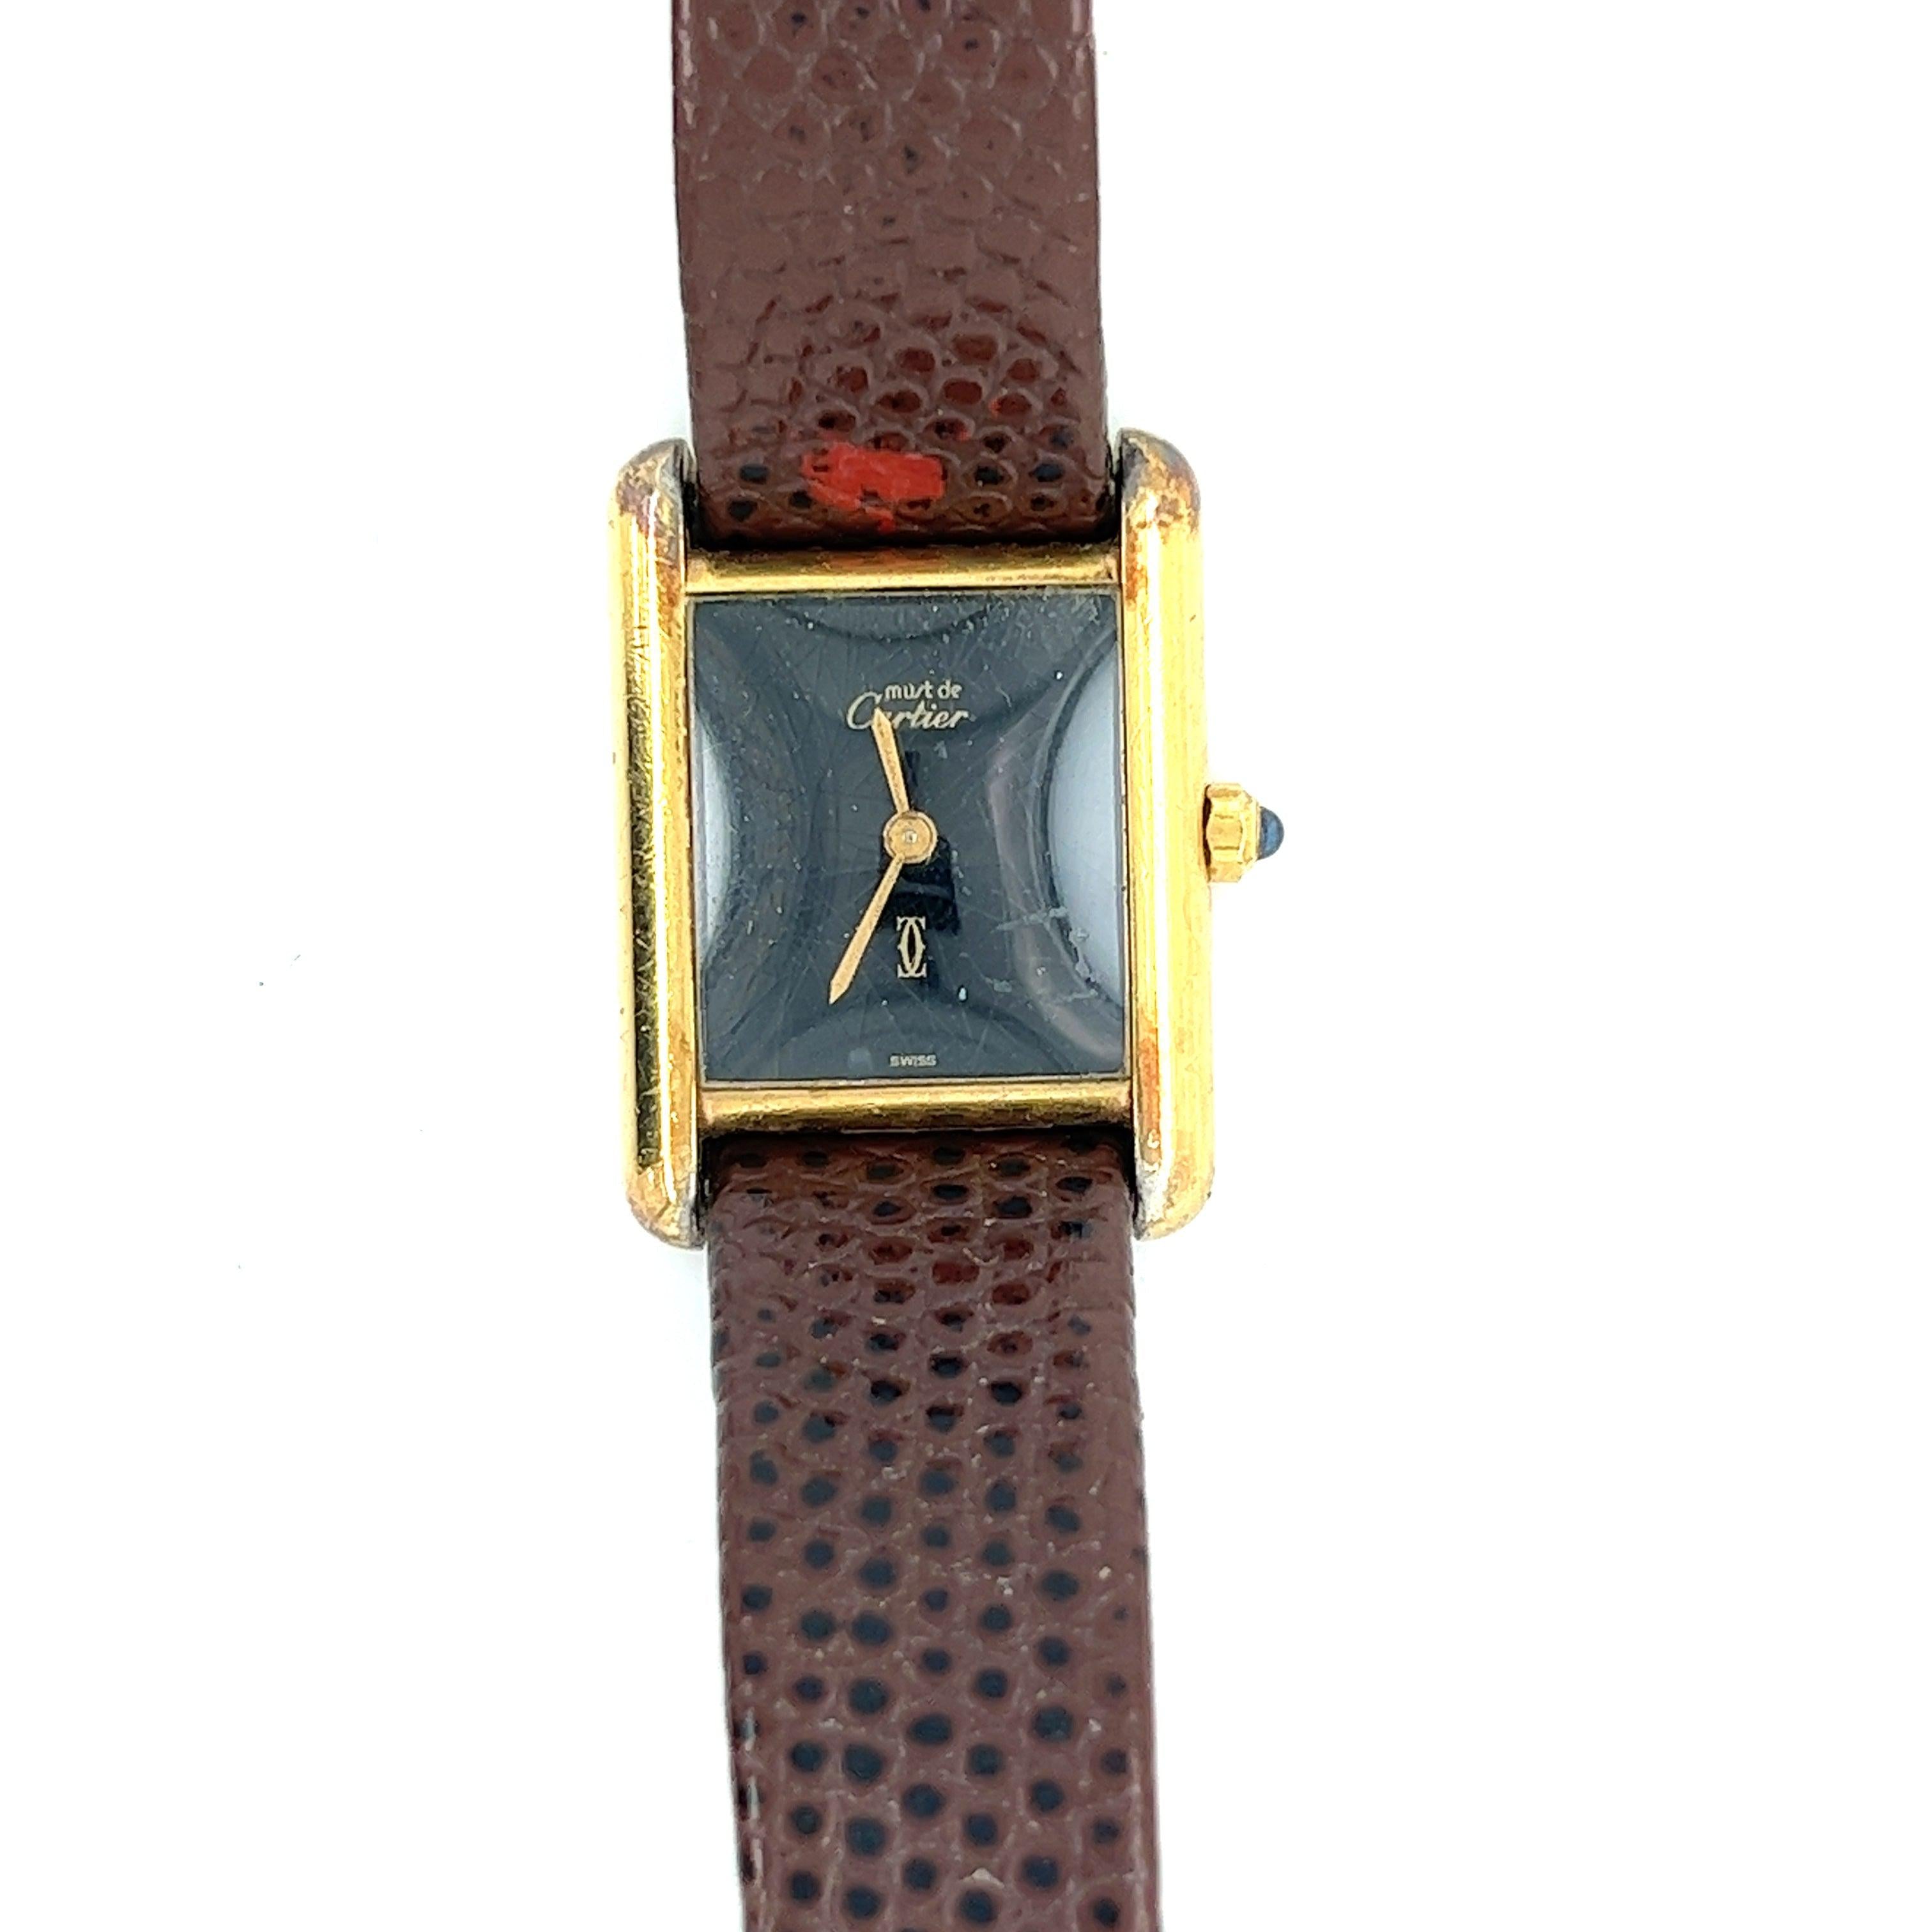 Gemex 1951 Sonata Watches — Advertisement